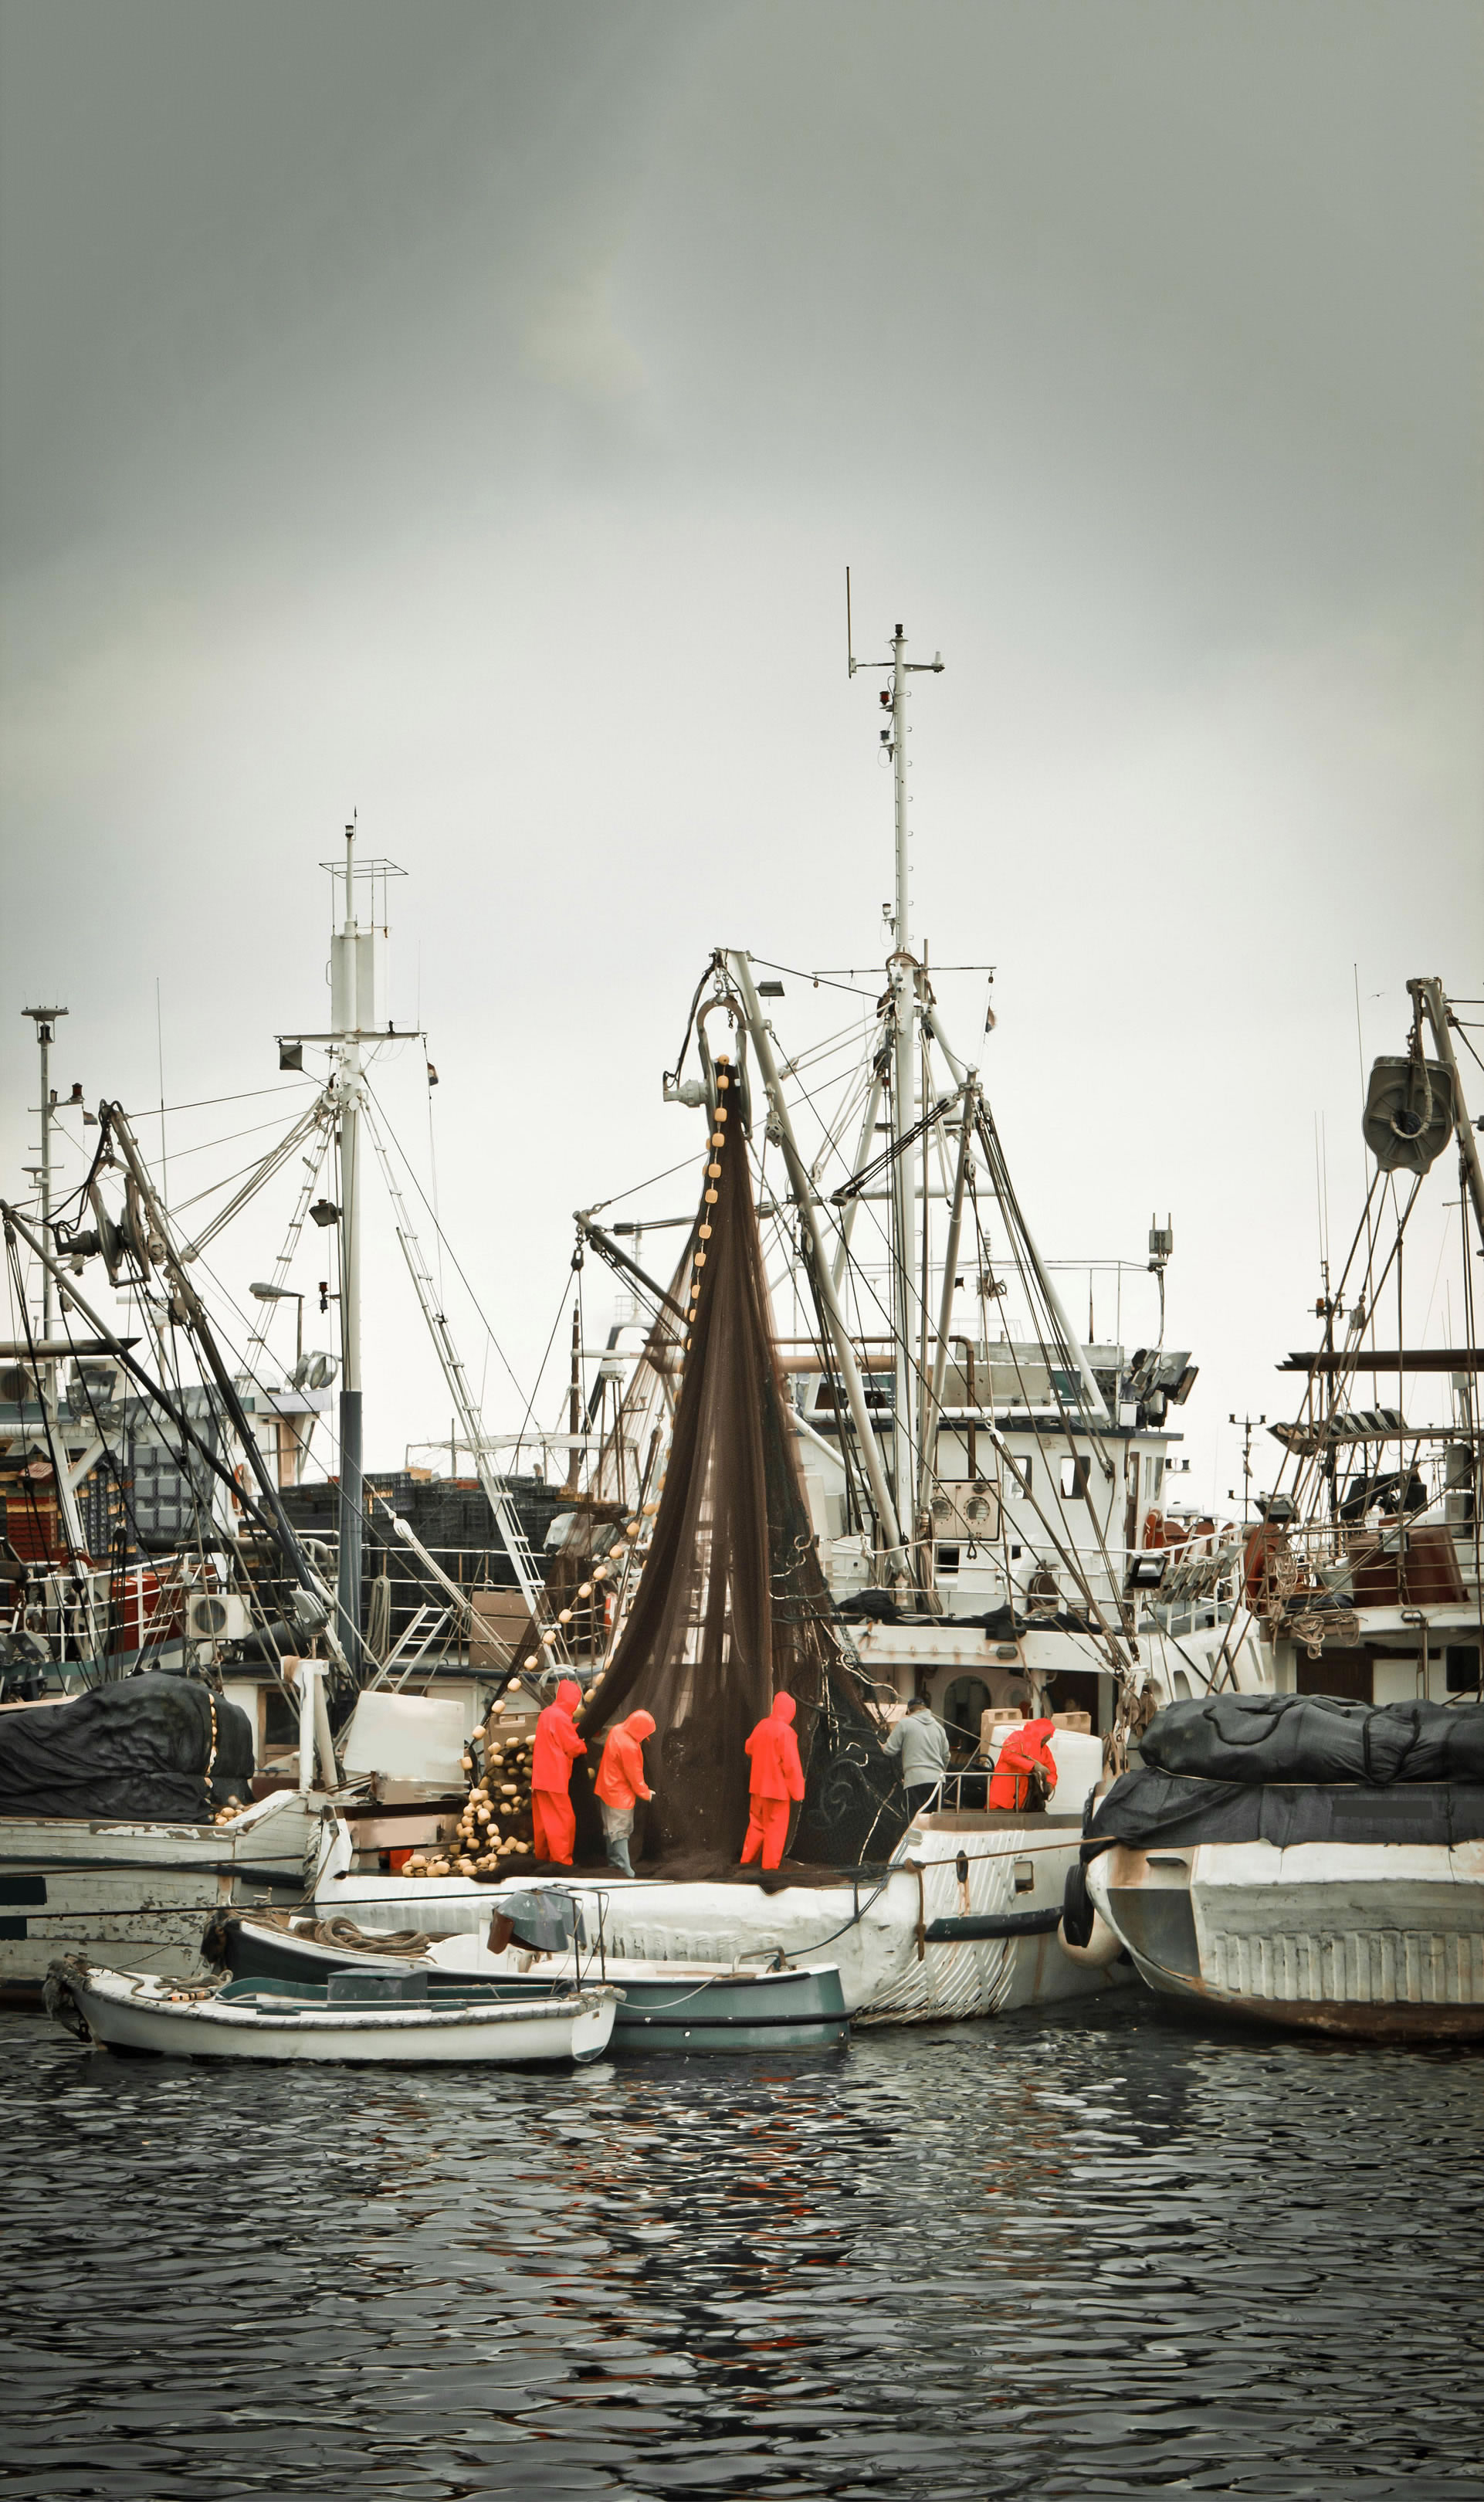 Pescari în echipament profesionist care manipulează o plasă de pescuit pe un trauler, în cadrul unei flote de ambarcațiuni într-un port de pescuit.